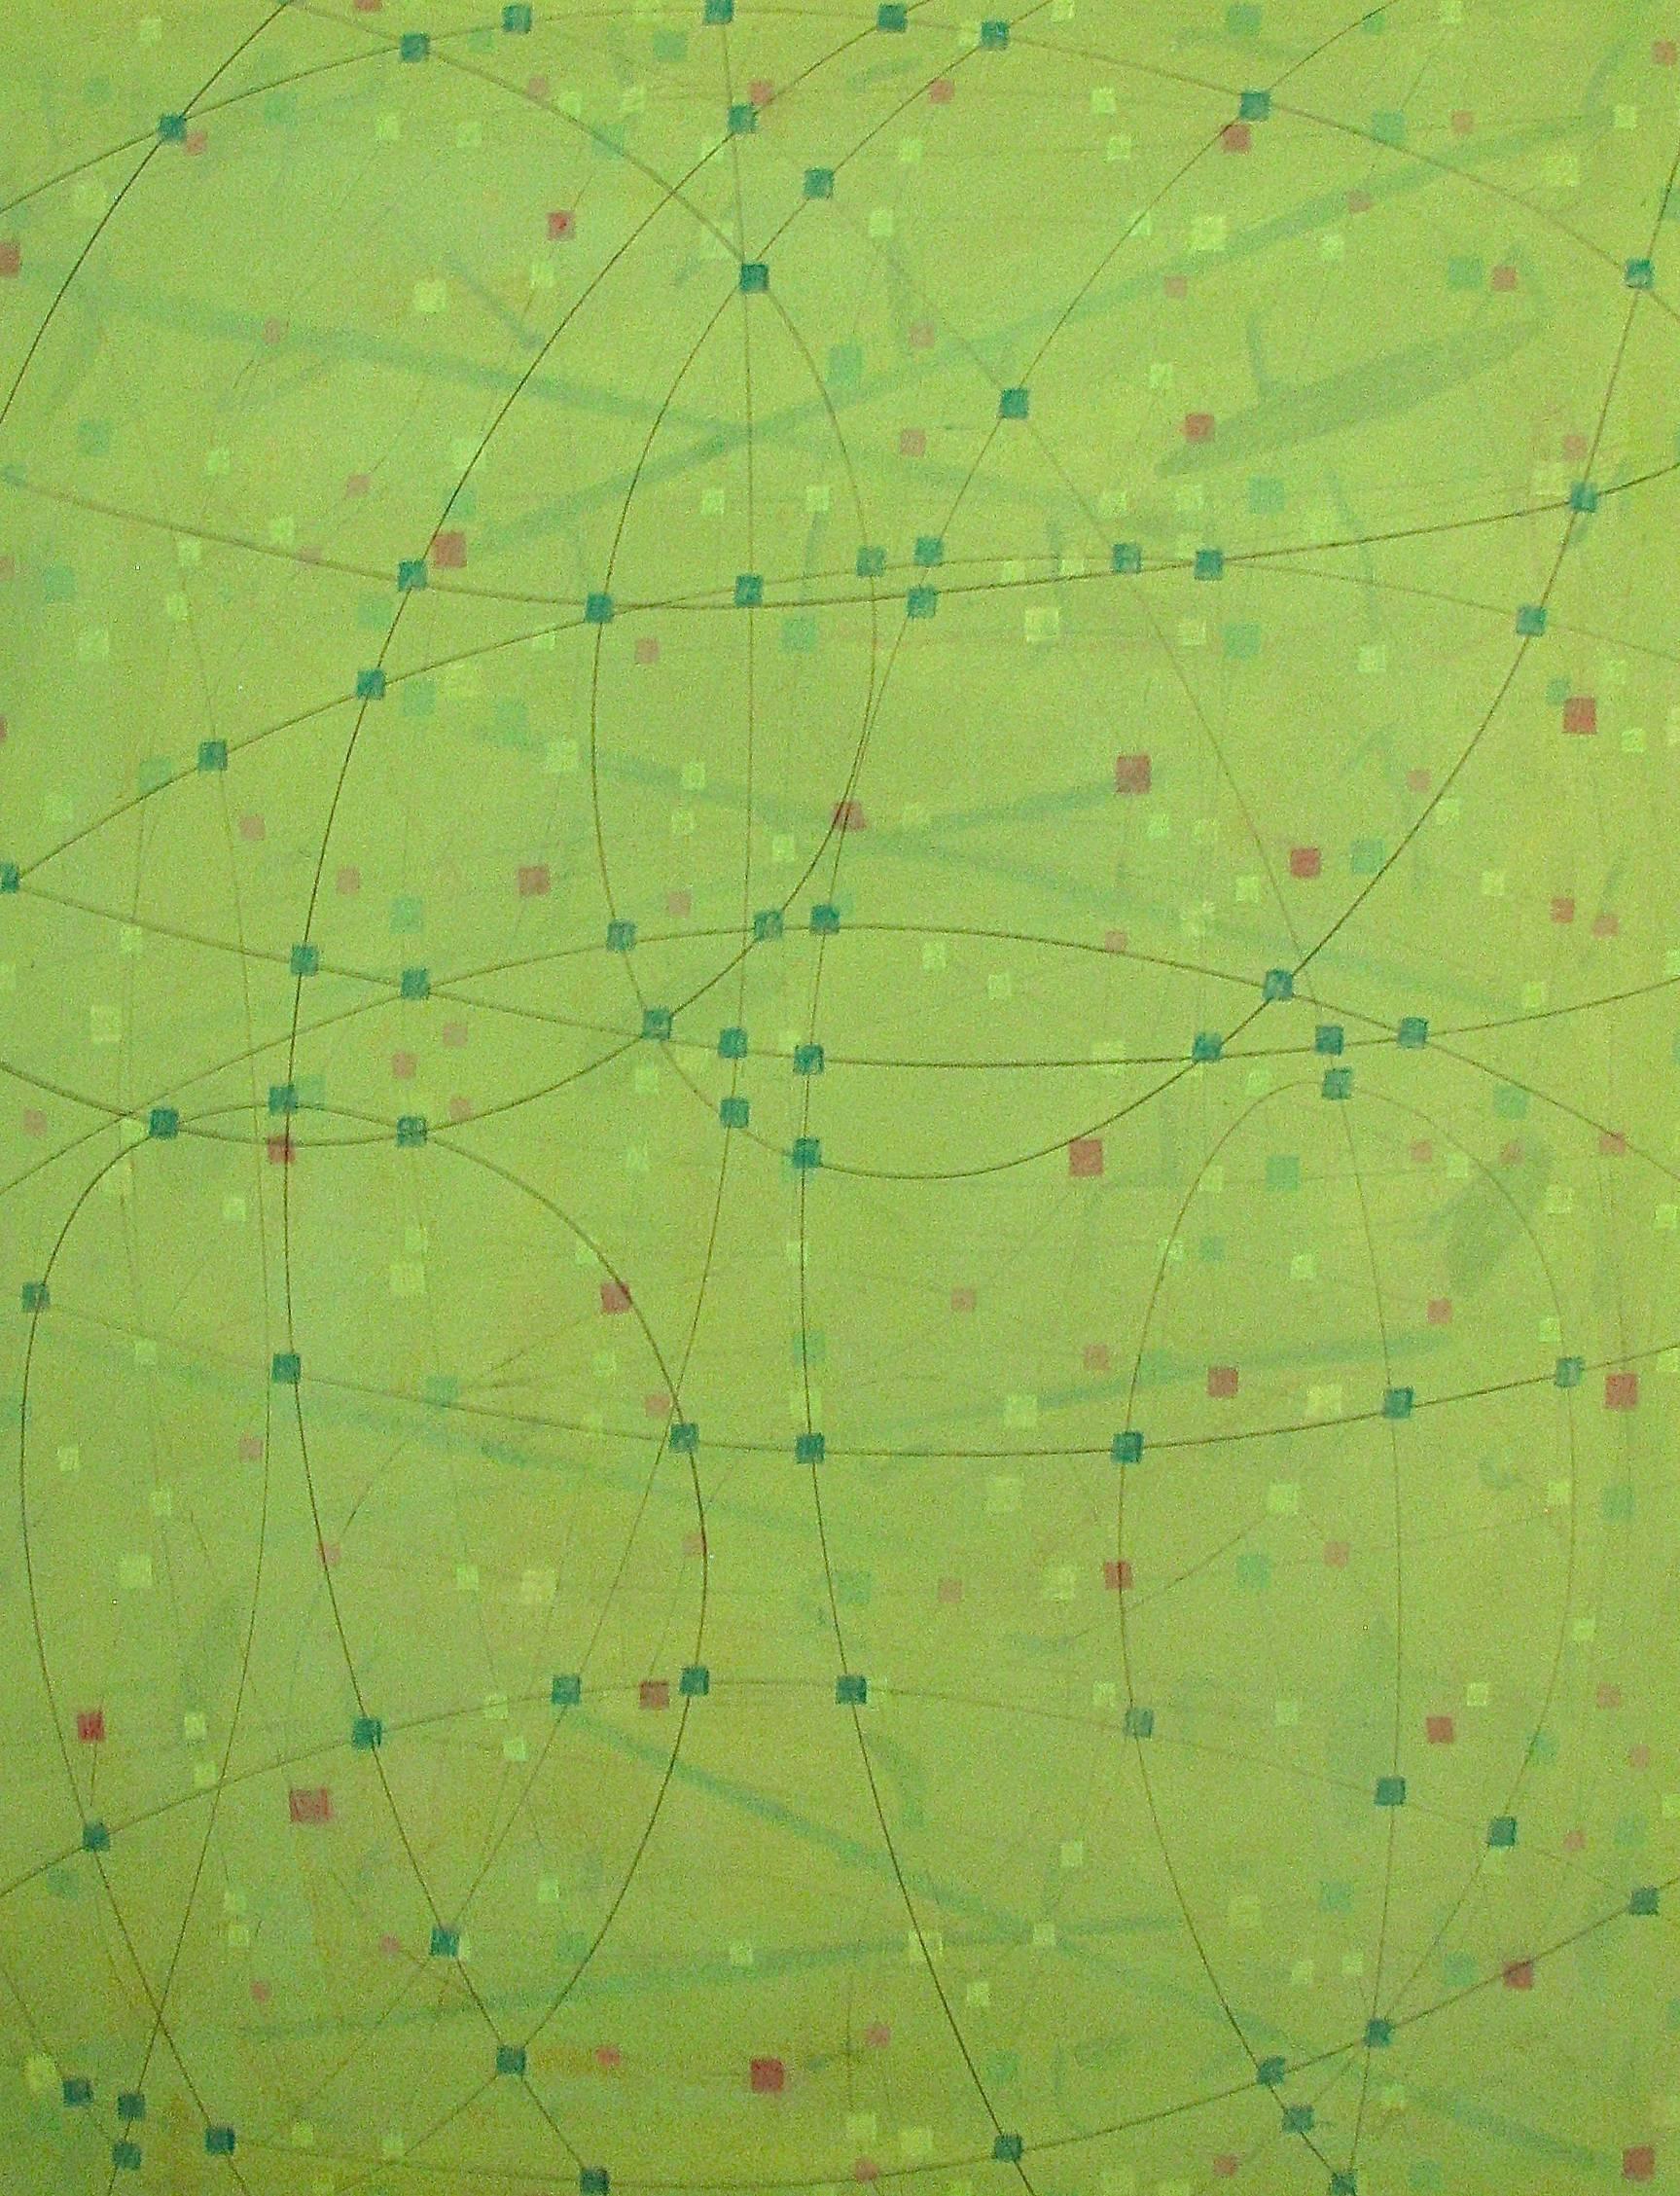 Abstract Drawing Nancy Berlin - ""Annotation 1" - Technique mixte abstraite, vert vif, colorée et ludique